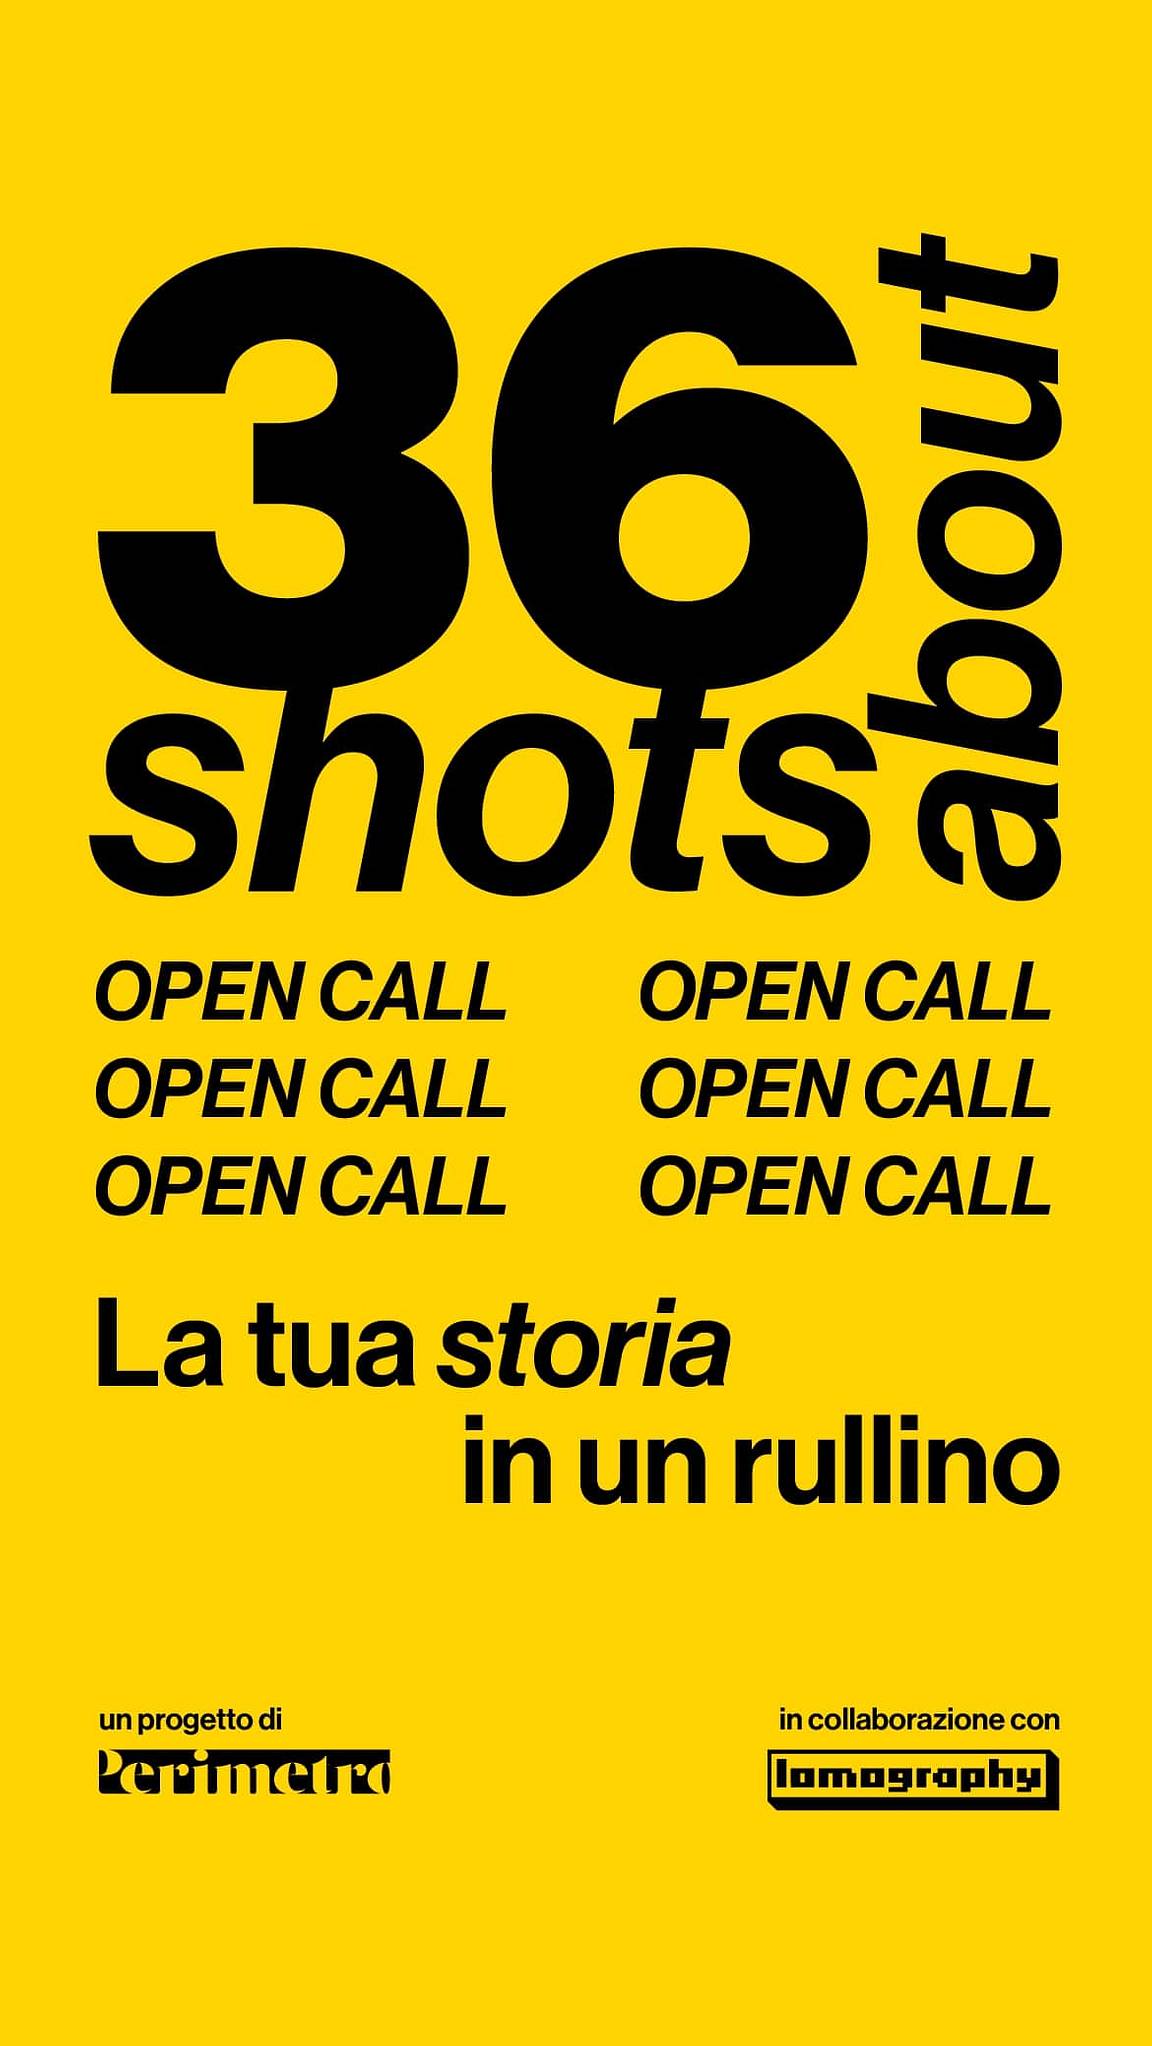 36 Shots About – La Tua Storia in un Rullino: Open Call Gratuita in Collaborazione con Perimetro